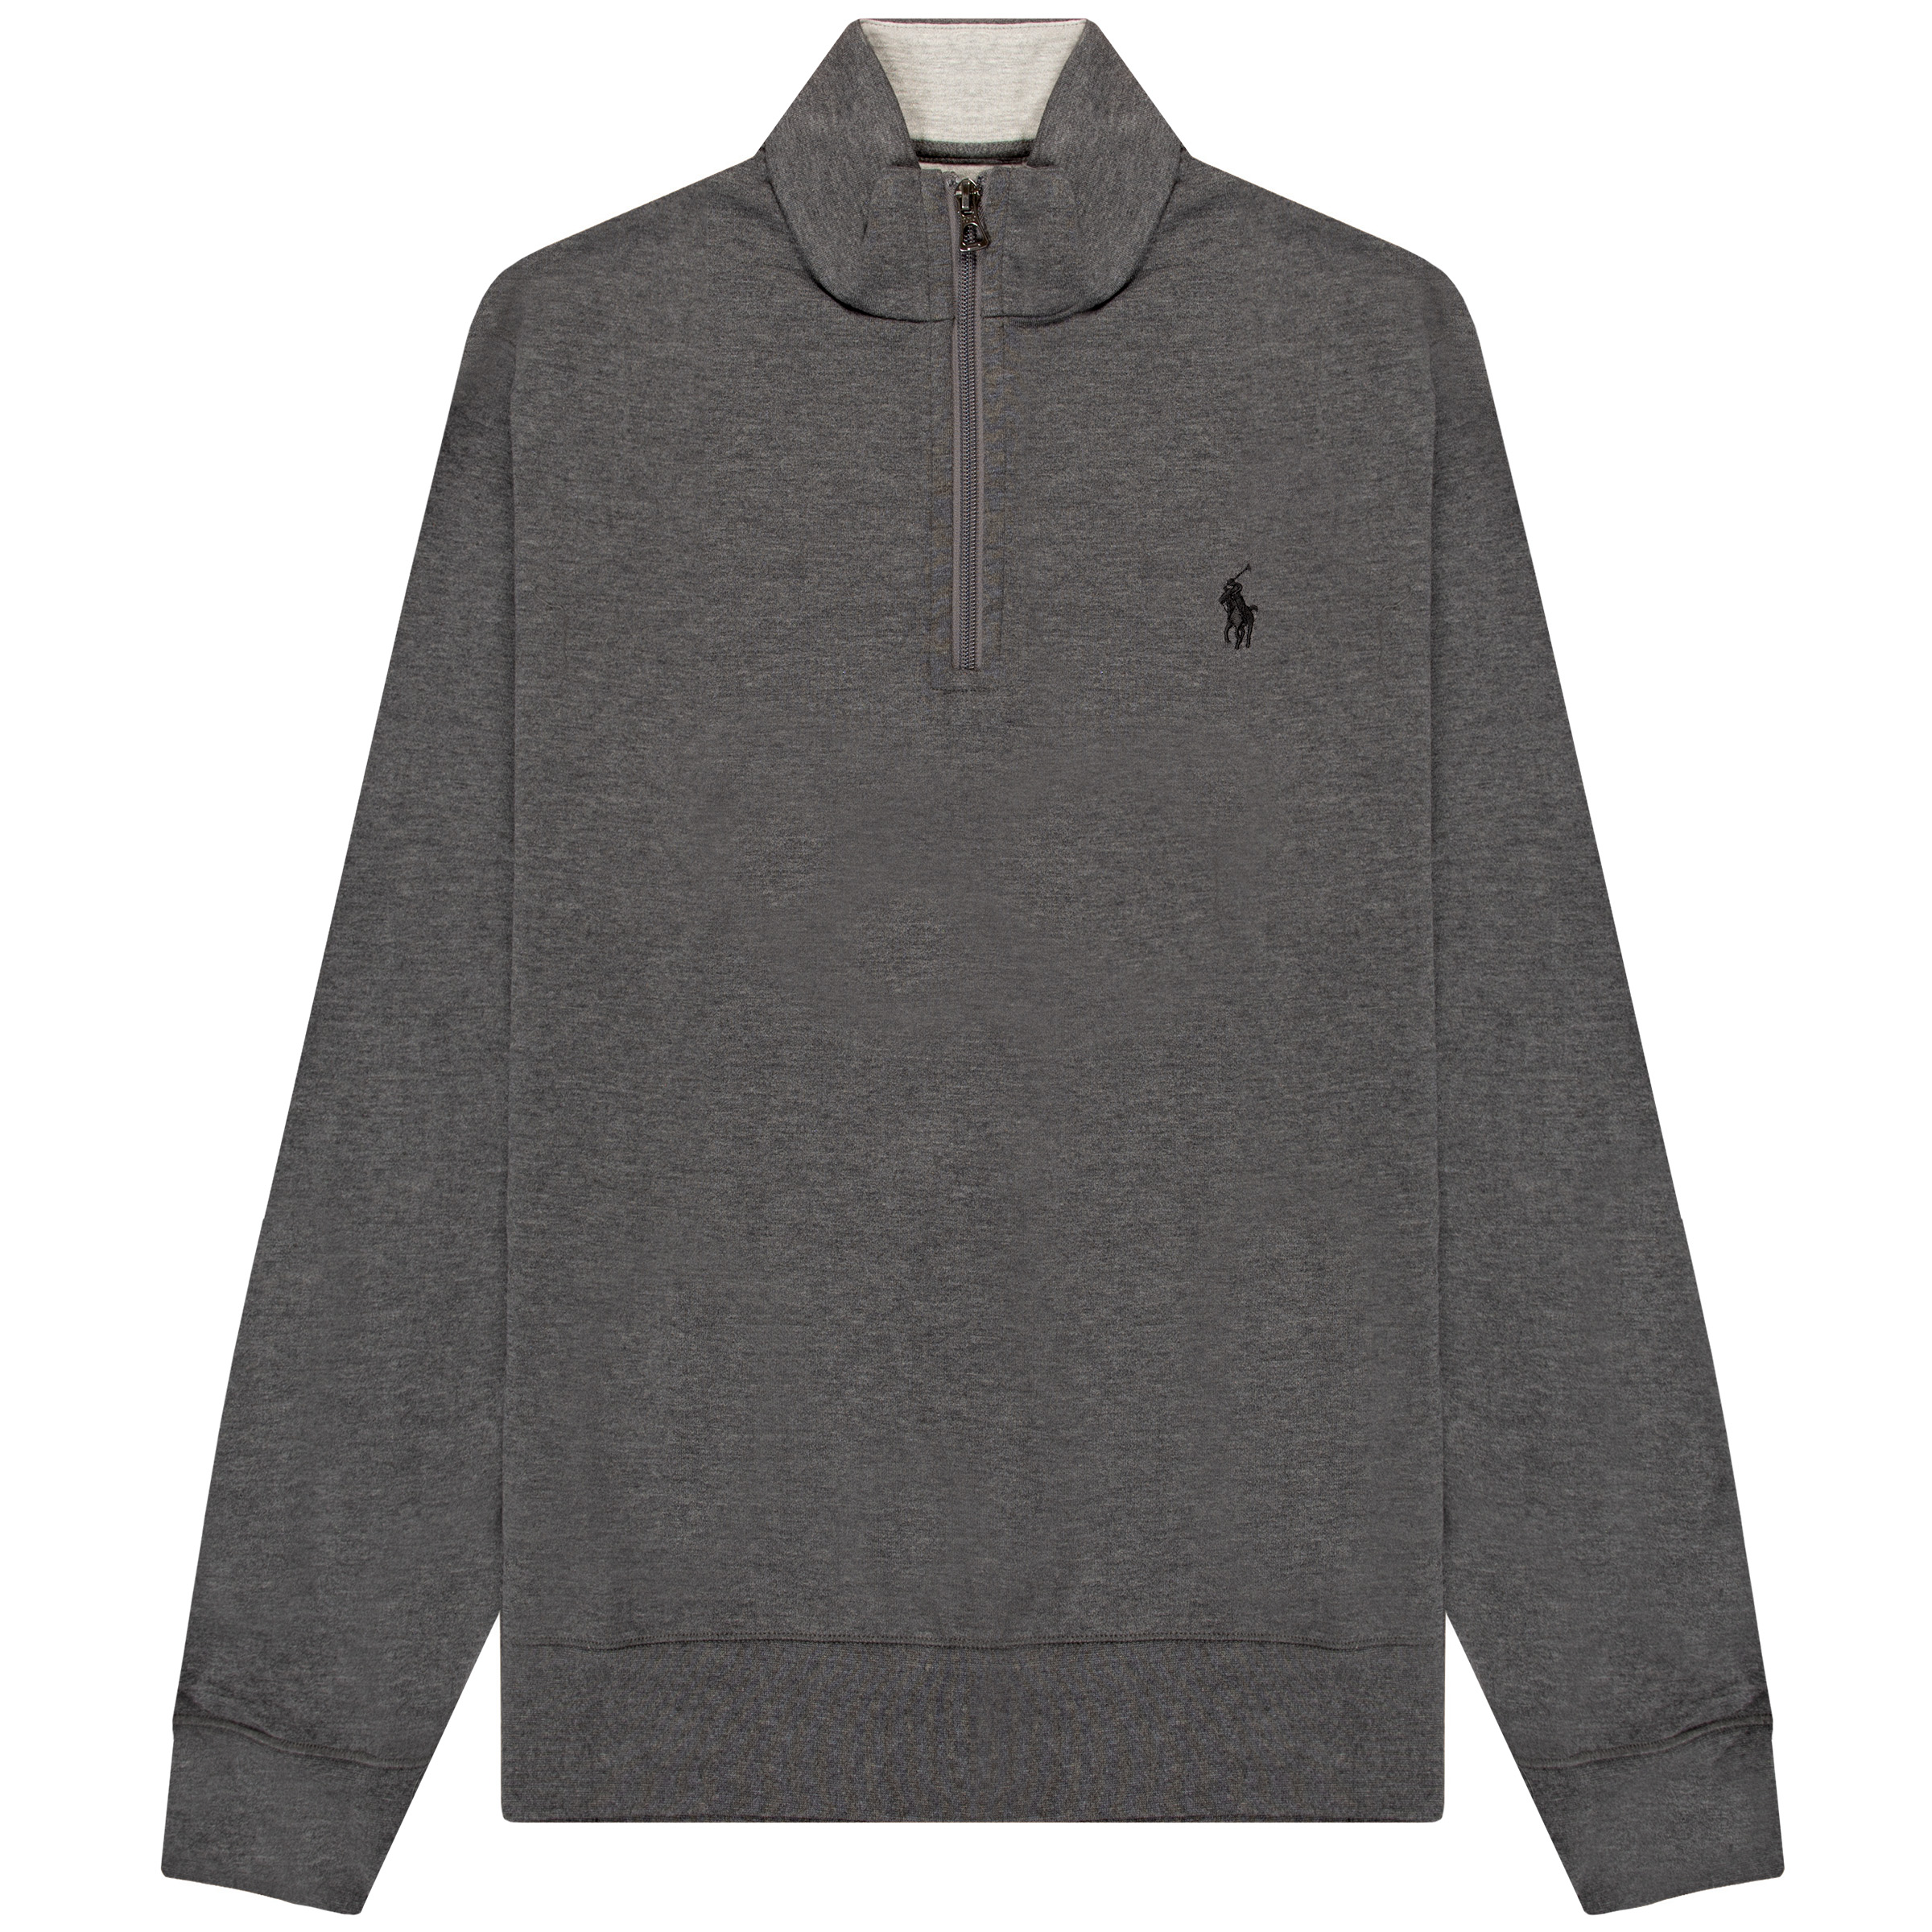 Polo Ralph Lauren Jersey 1/4 Zip Pullover Sweatshirt Dark Grey Heather